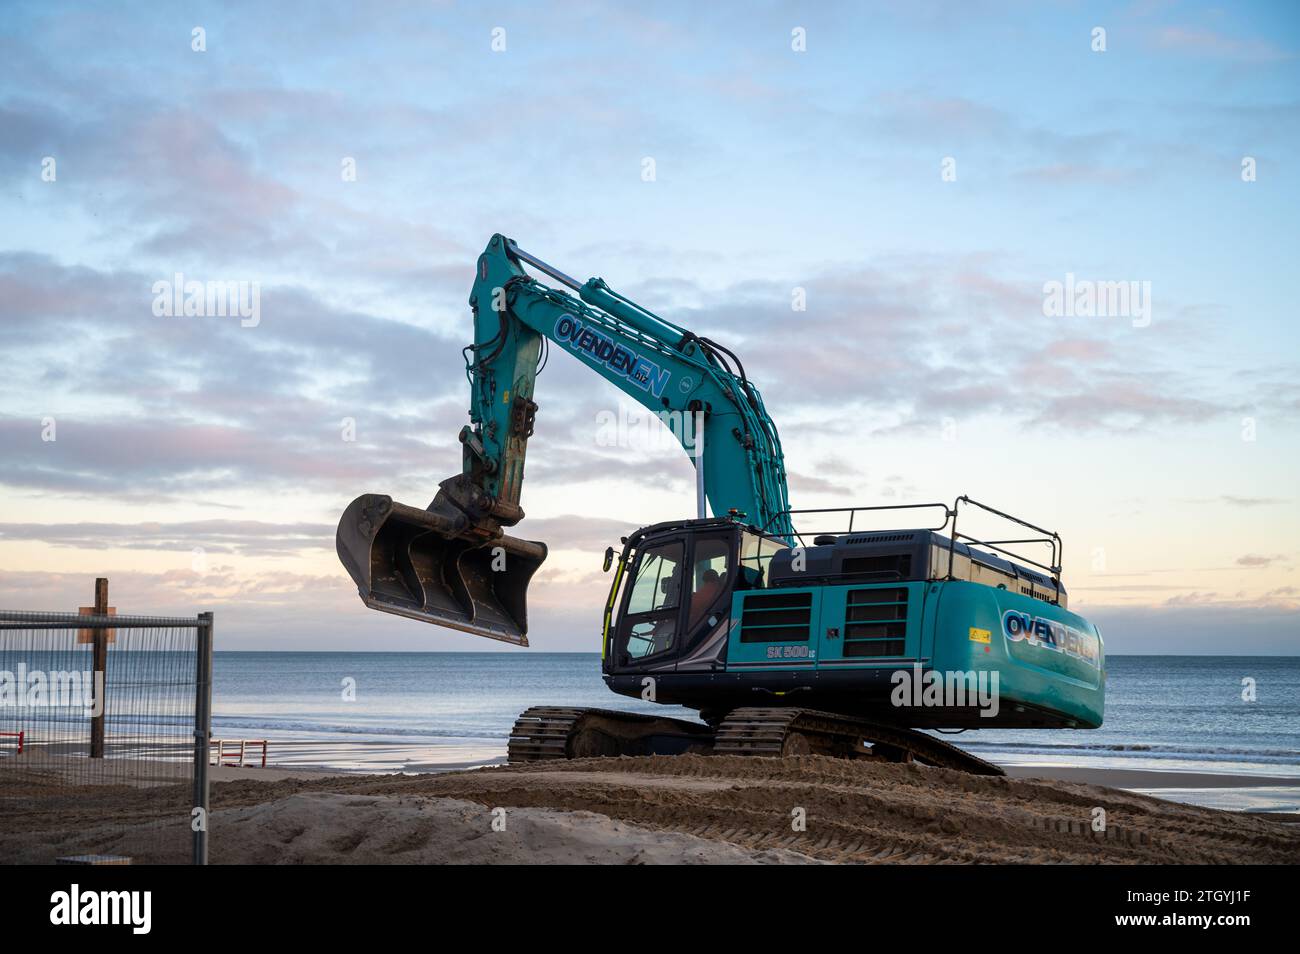 La spiaggia di Bournemouth, che si occupa della manutenzione, organizza la sabbia intorno a nuove barriere lungo la costa Foto Stock